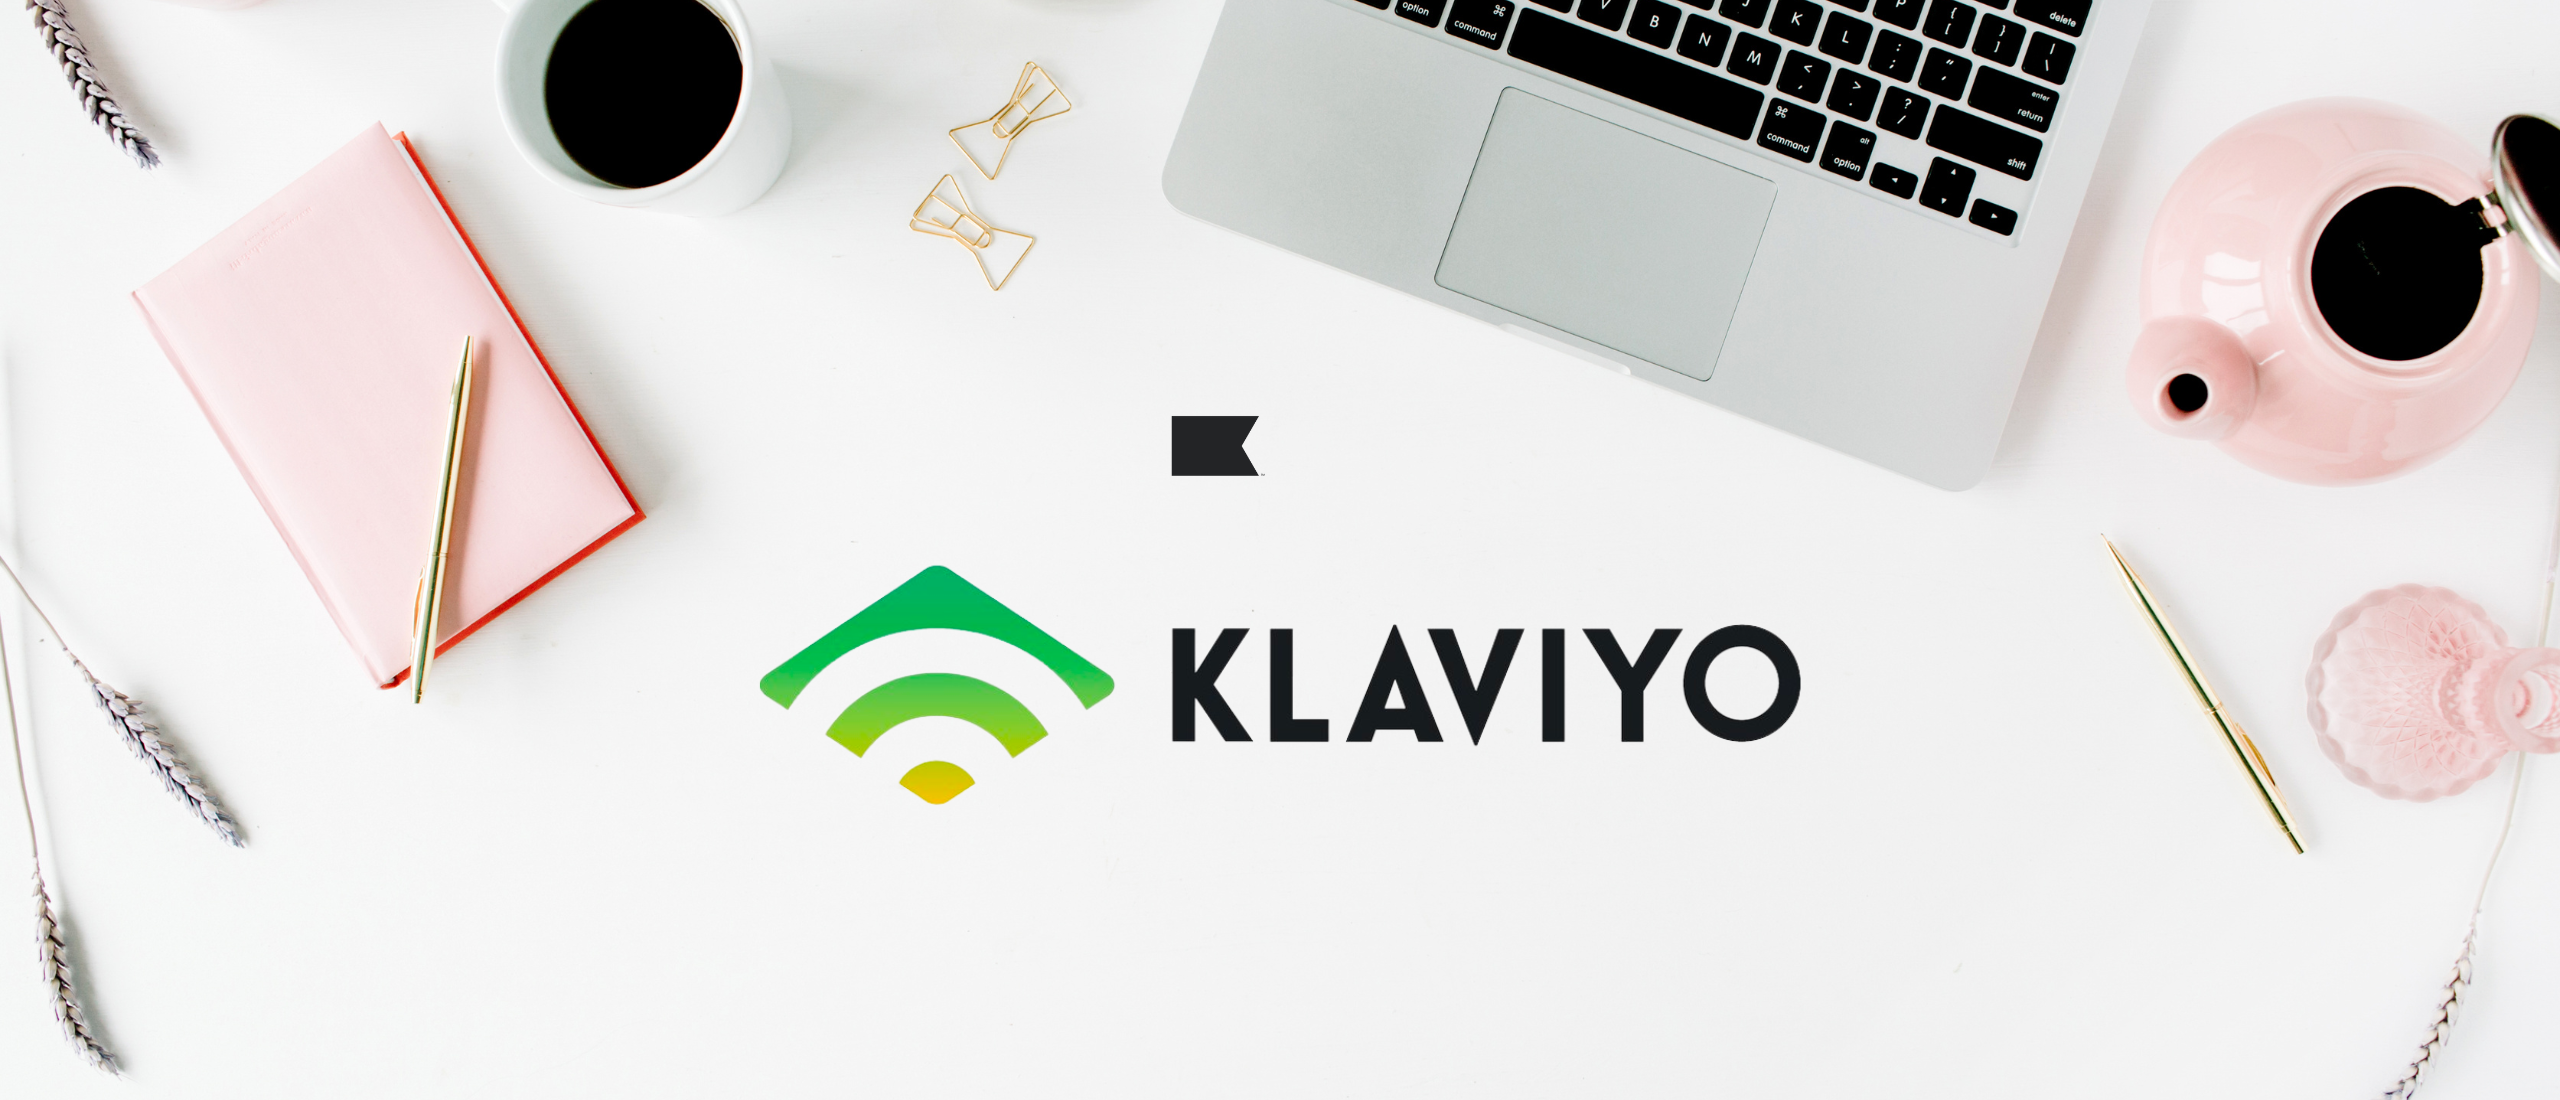 Dit zijn de belangrijkste e-mail flows op Klaviyo